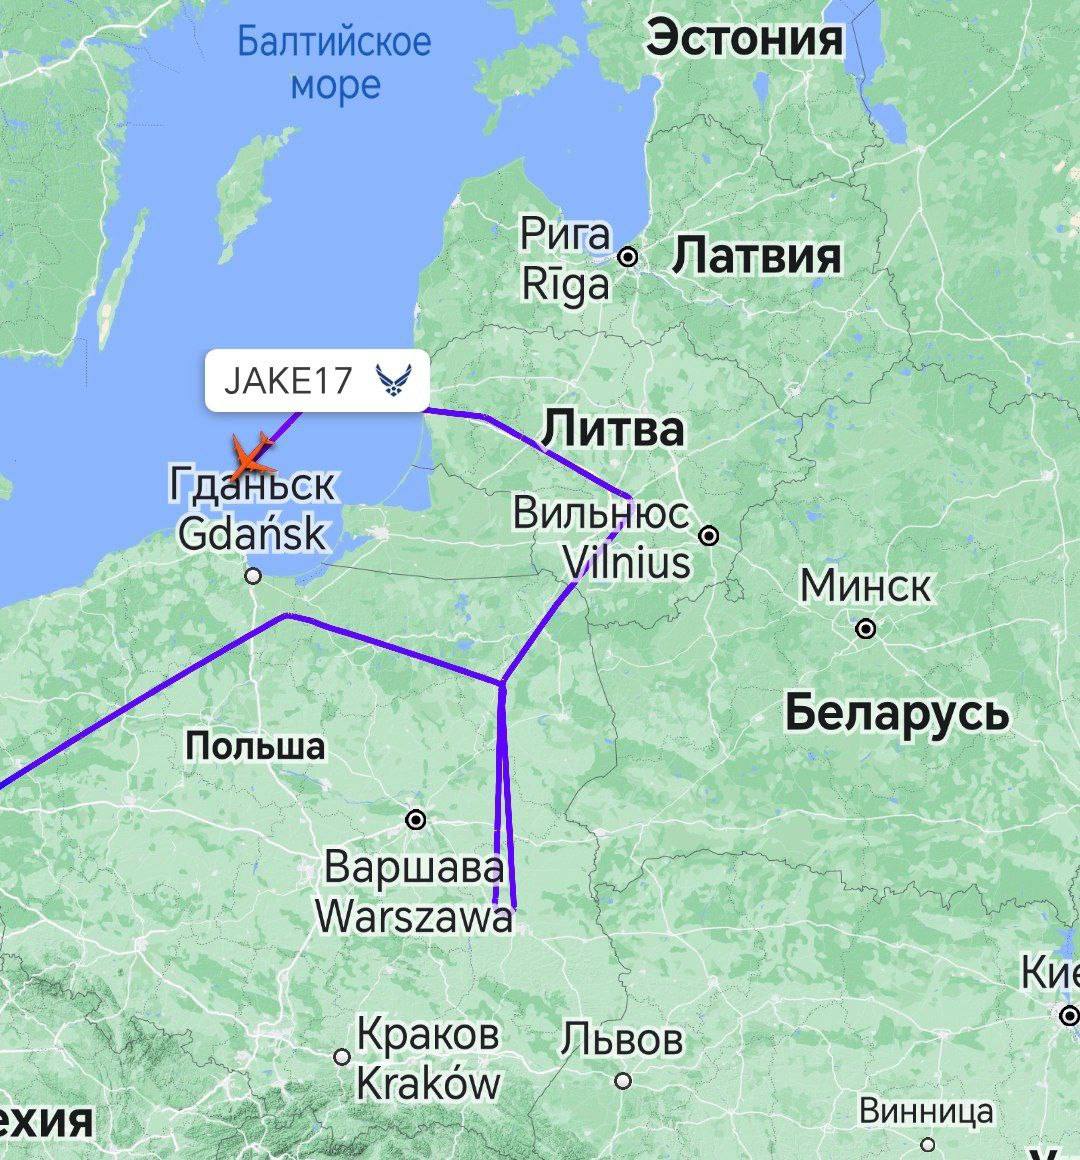 Самолёт радиоэлектронной разведки Boeing RC-135V Rivet Joint ВВС США в эти минуты работает на направлении Калининградской области, которую он способен видеть "насквозь".  До этого борт снова вёл разведку на границе Белоруссии и Украины.  #НАТО #США #Россия